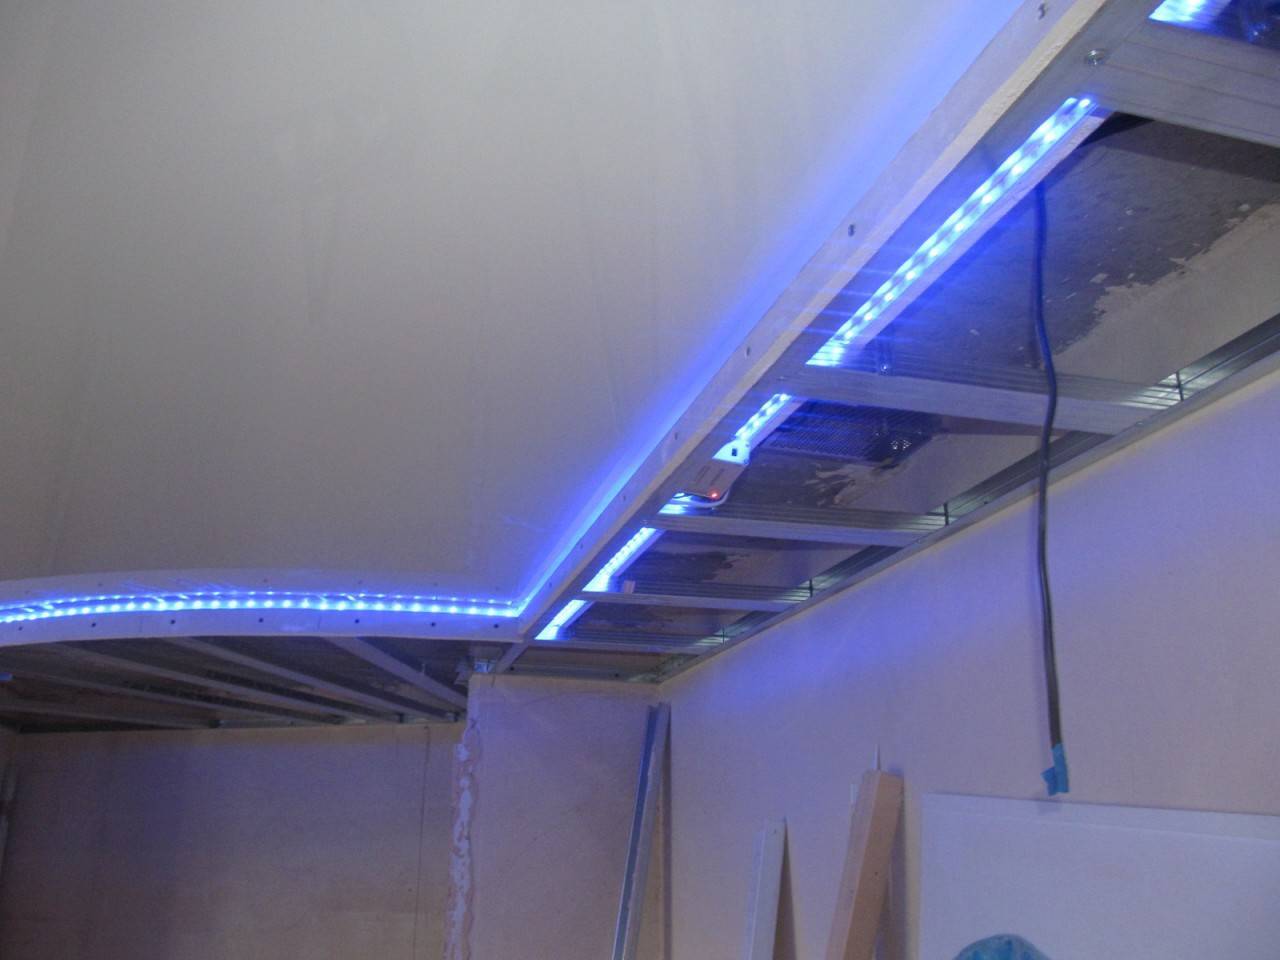 Устройство и монтаж потолков из гипсокартона с подсветкой, фото освещения в дизайне потолка